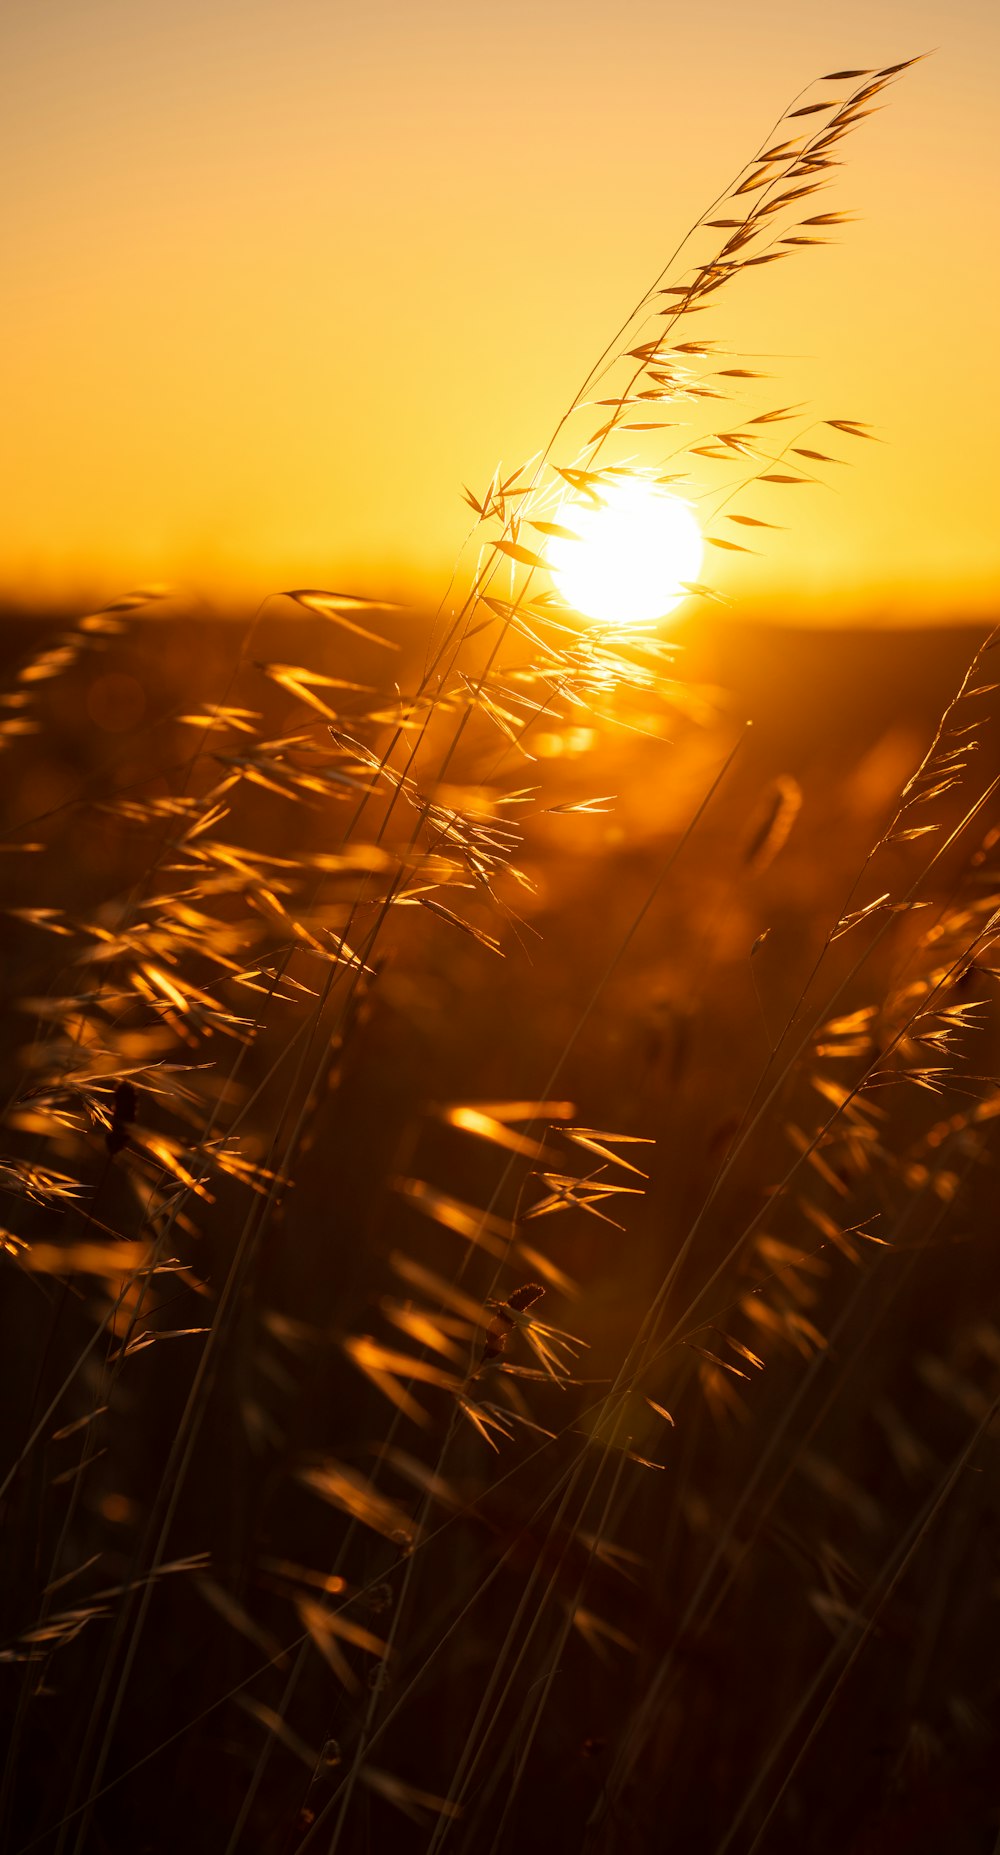 Braunes Weizenfeld bei Sonnenuntergang